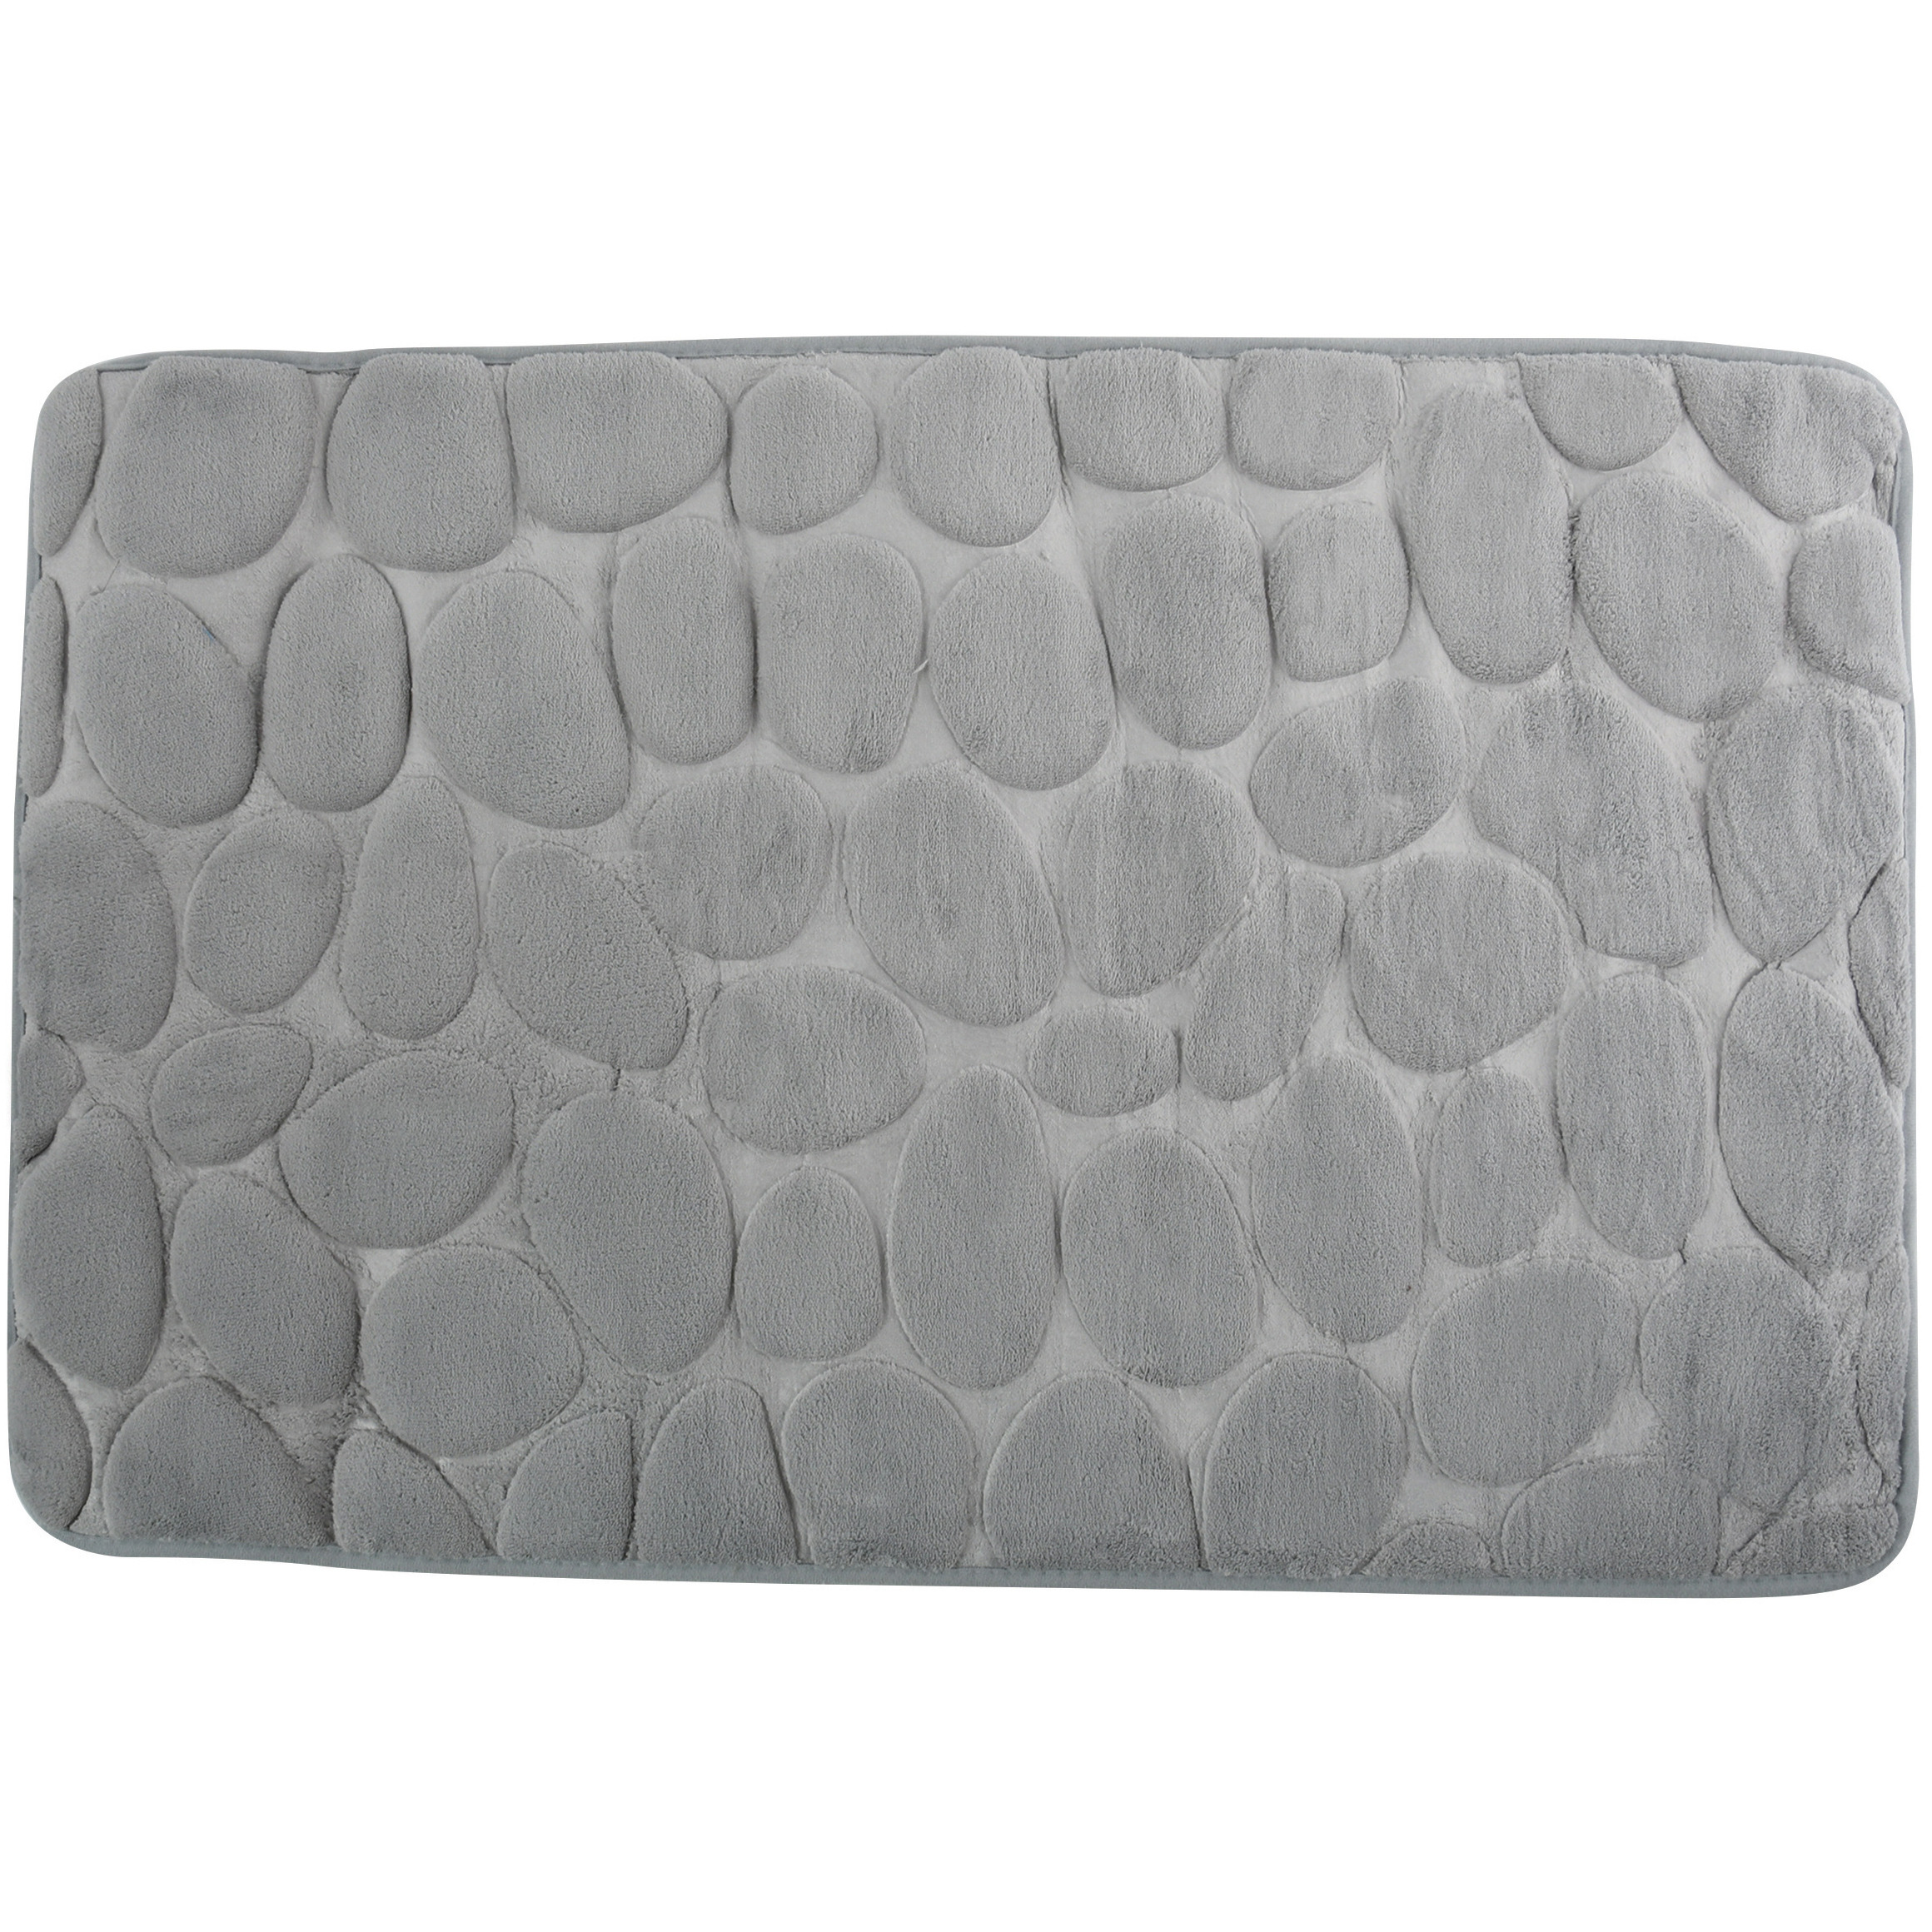 Badkamerkleedje-badmat tapijt kiezel motief vloermat grijs 50 x 80 cm laagpolig